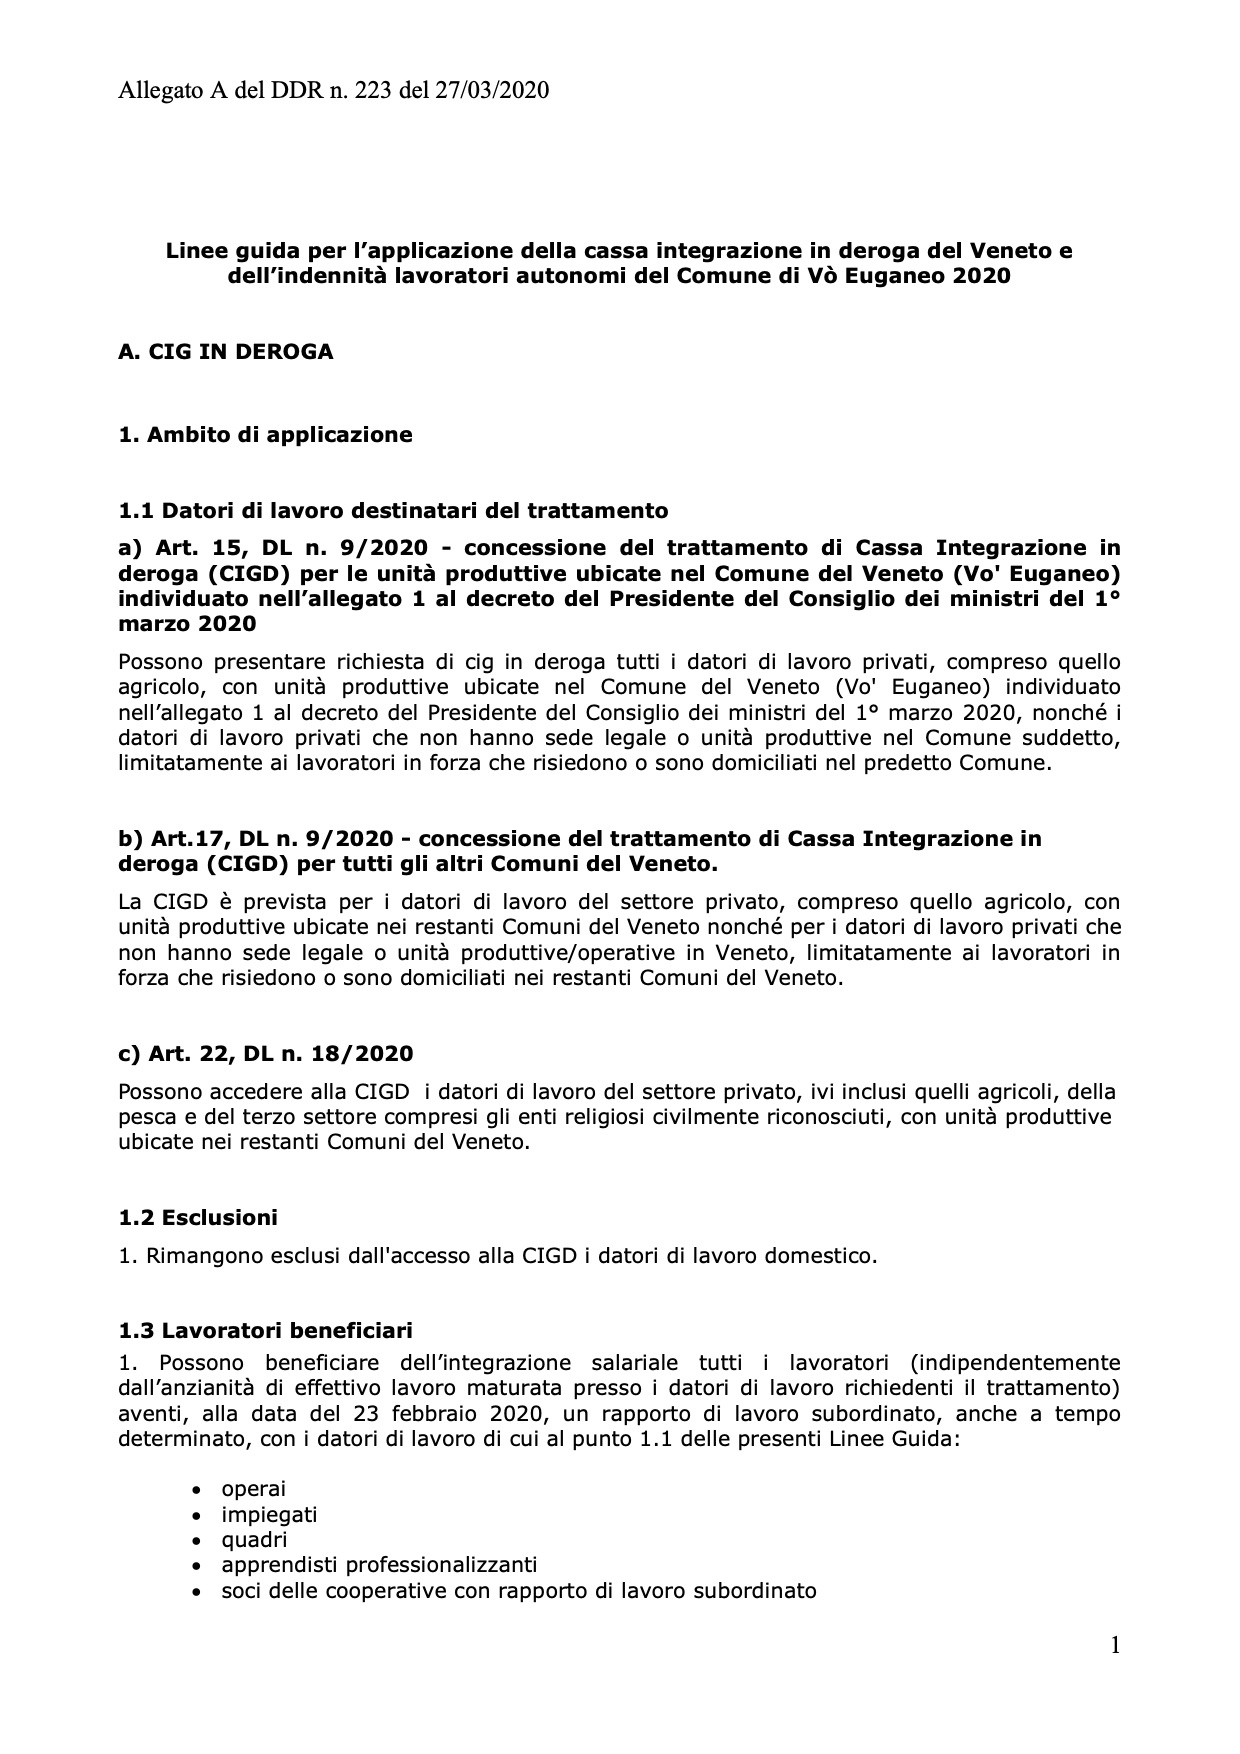 Allegato A DDR Veneto 27.03.2020 - Linee guida per l’applicazione della cassa integrazione in deroga del Veneto e dell’indennità lavoratori autonomi del Comune di Vò Euganeo 2020